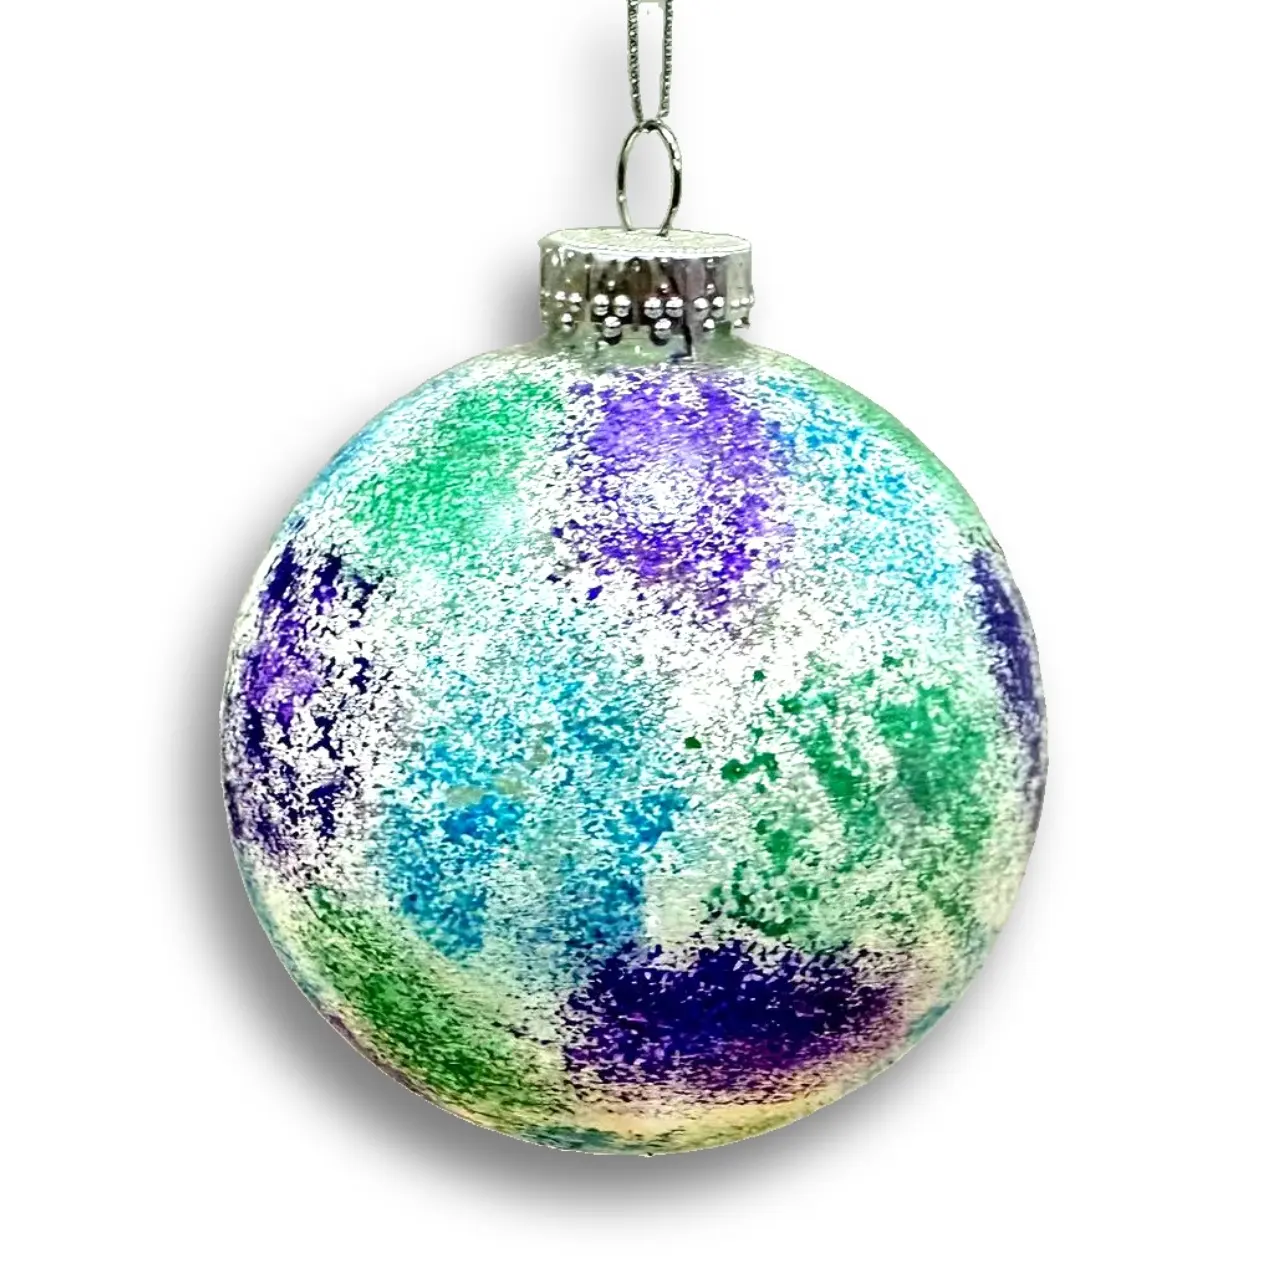 Dekorasi pohon Natal, bola kaca dekorasi pesta liburan angin sederhana, warna-warni efek khusus ornamen bola kaca